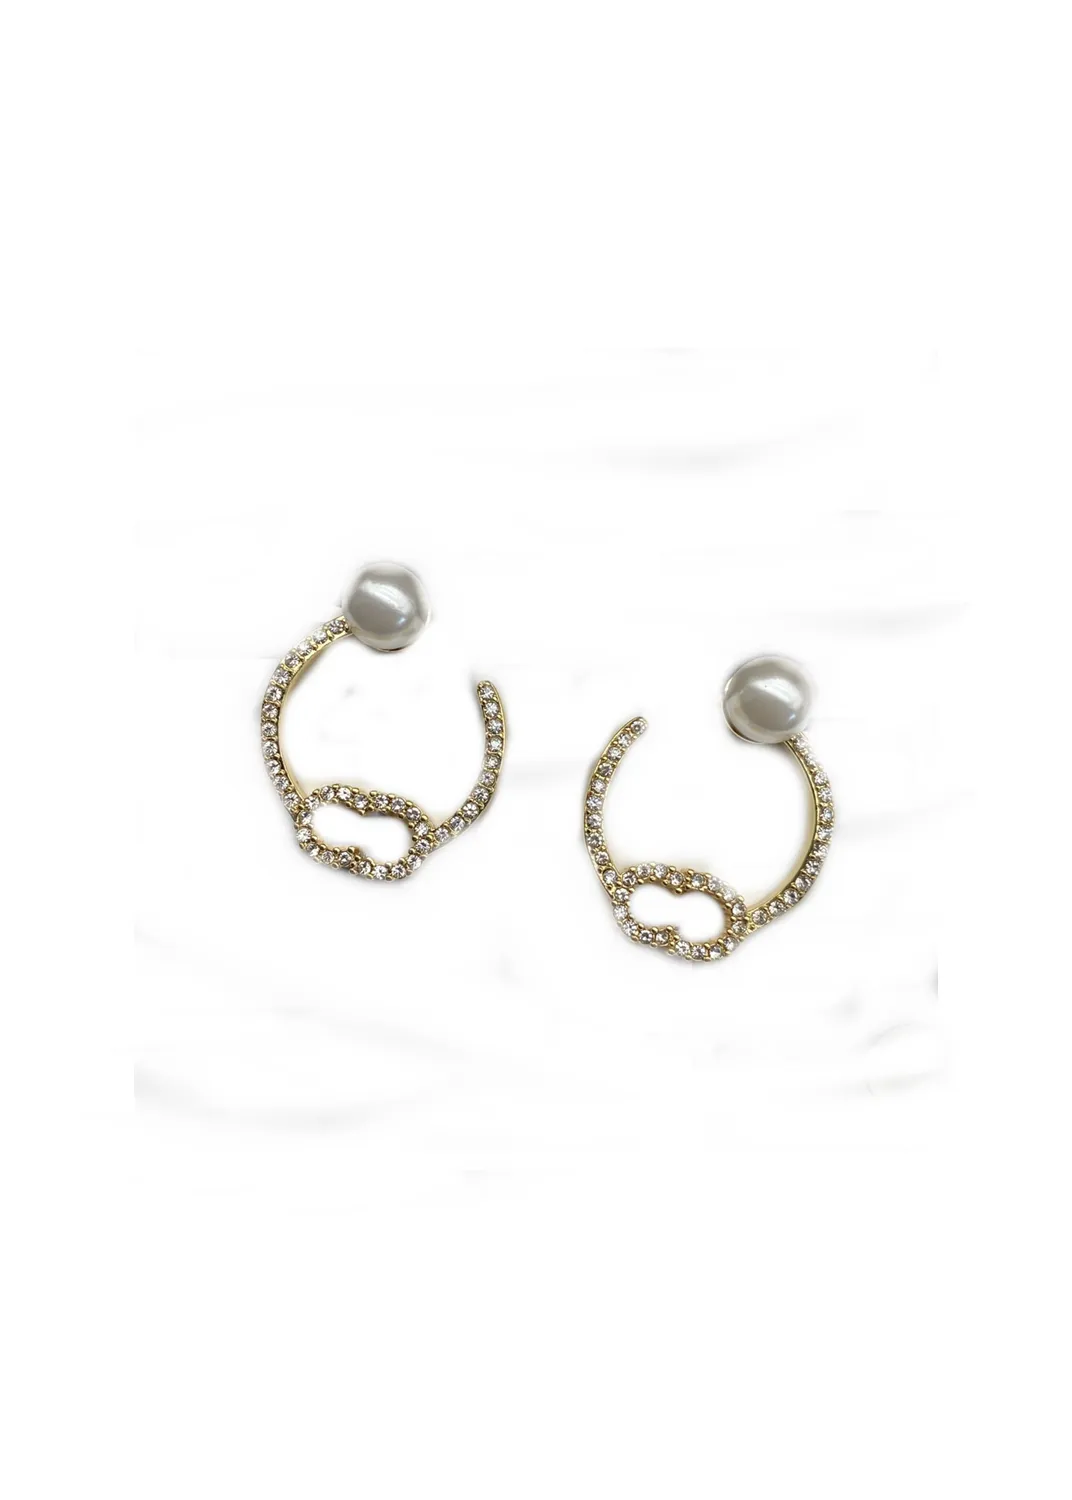 Boucles d'oreilles fiançailles mariage dames boucles d'oreilles pendantes perles saint valentin cadeaux 2202u